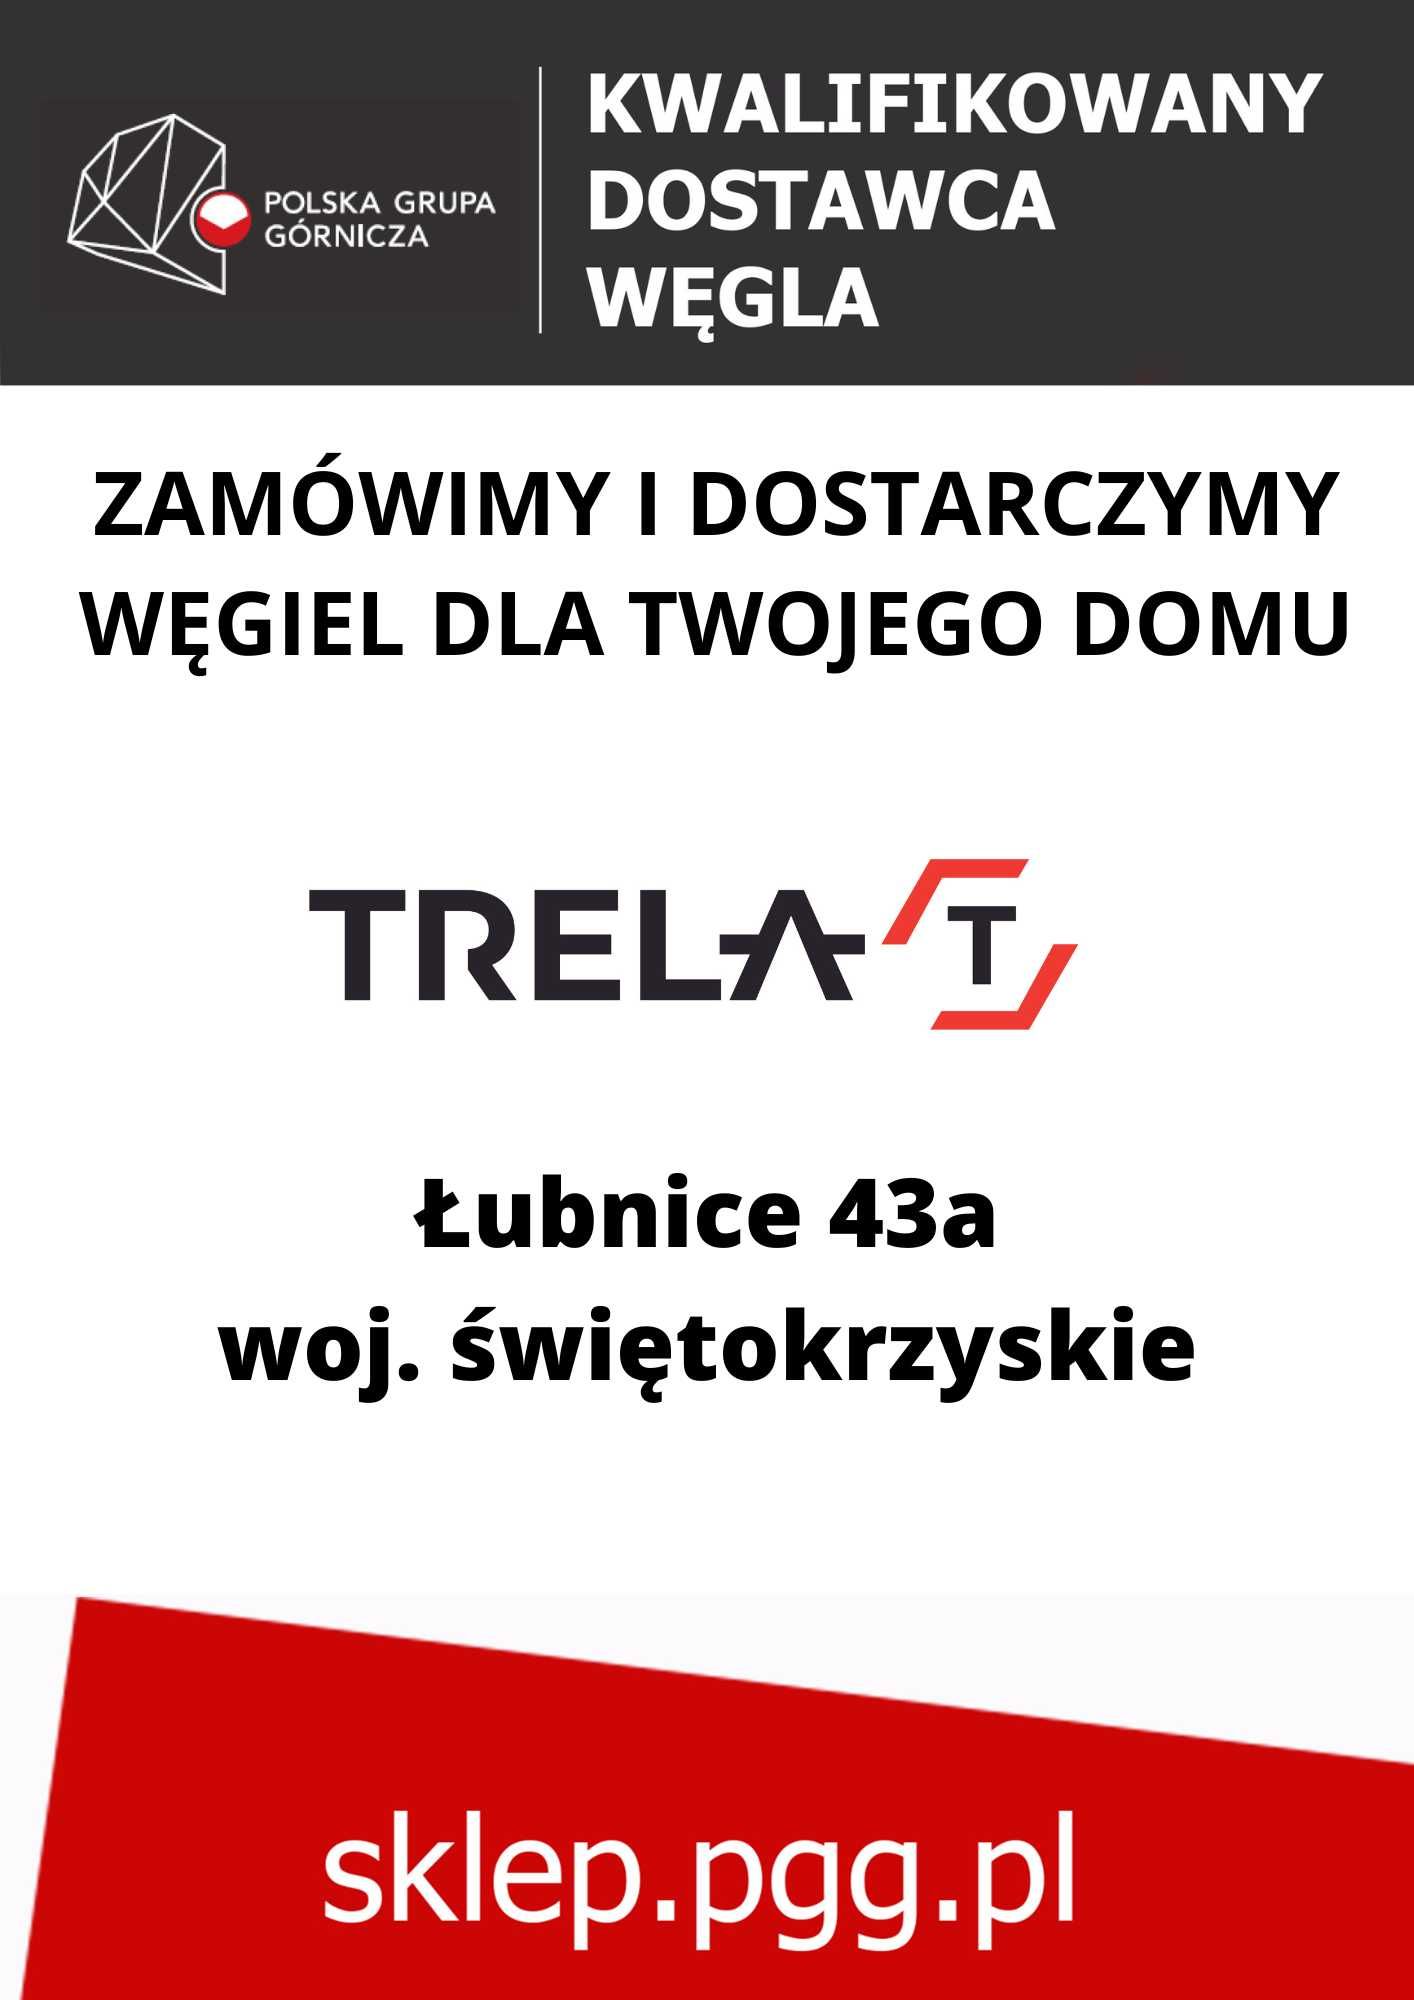 Polski Węgiel - Kostka, Orzech - Mysłowice-Wesoła, Piast, Ziemowit